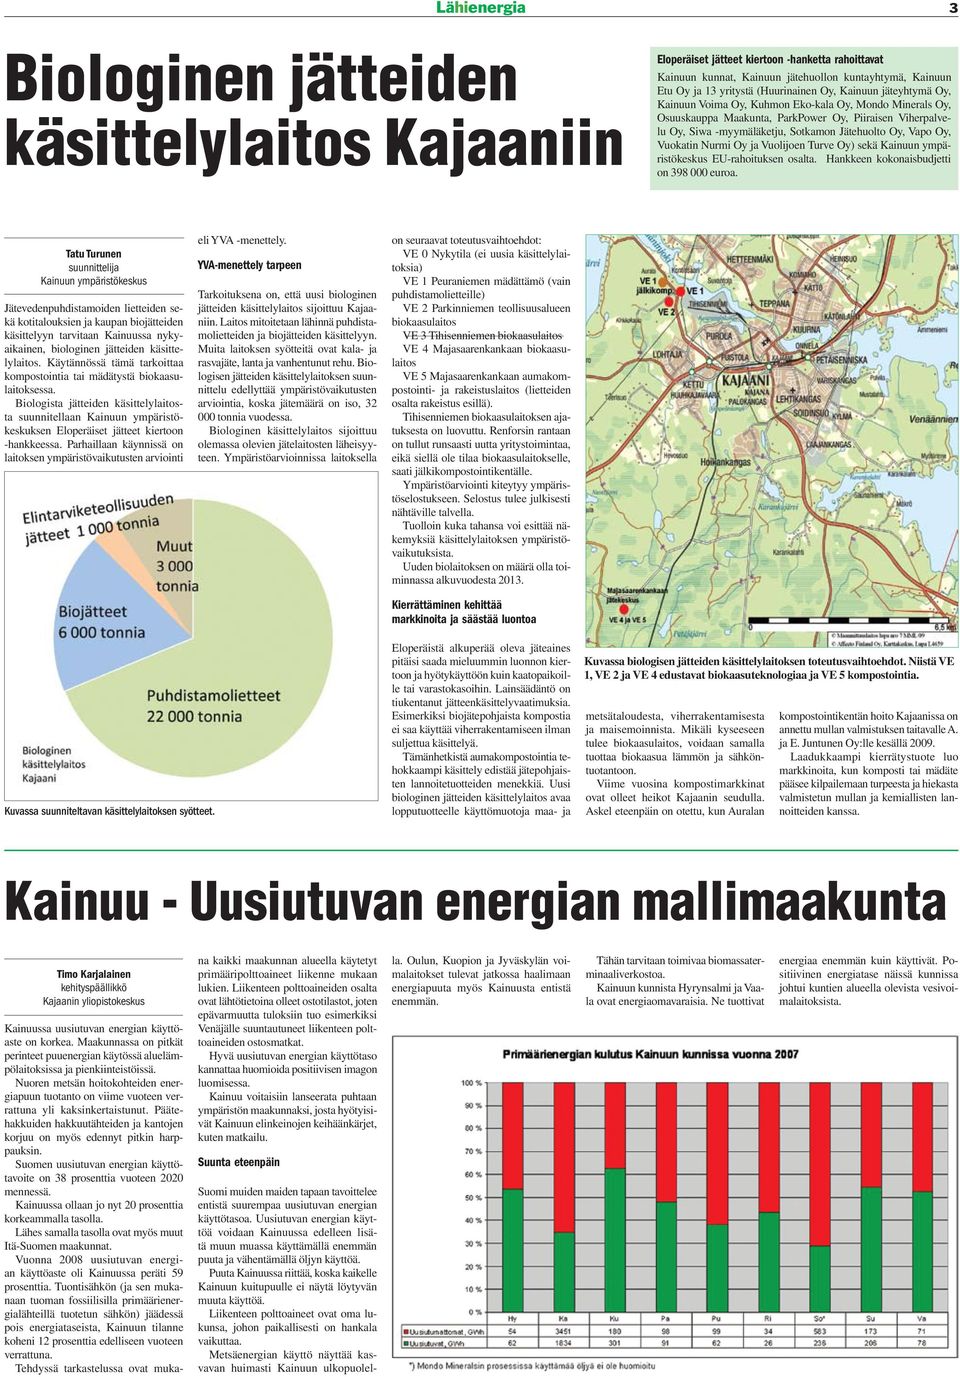 Oy, Vapo Oy, Vuokatin Nurmi Oy ja Vuolijoen Turve Oy) sekä Kainuun ympäristökeskus EU-rahoituksen osalta. Hankkeen kokonaisbudjetti on 398 000 euroa.